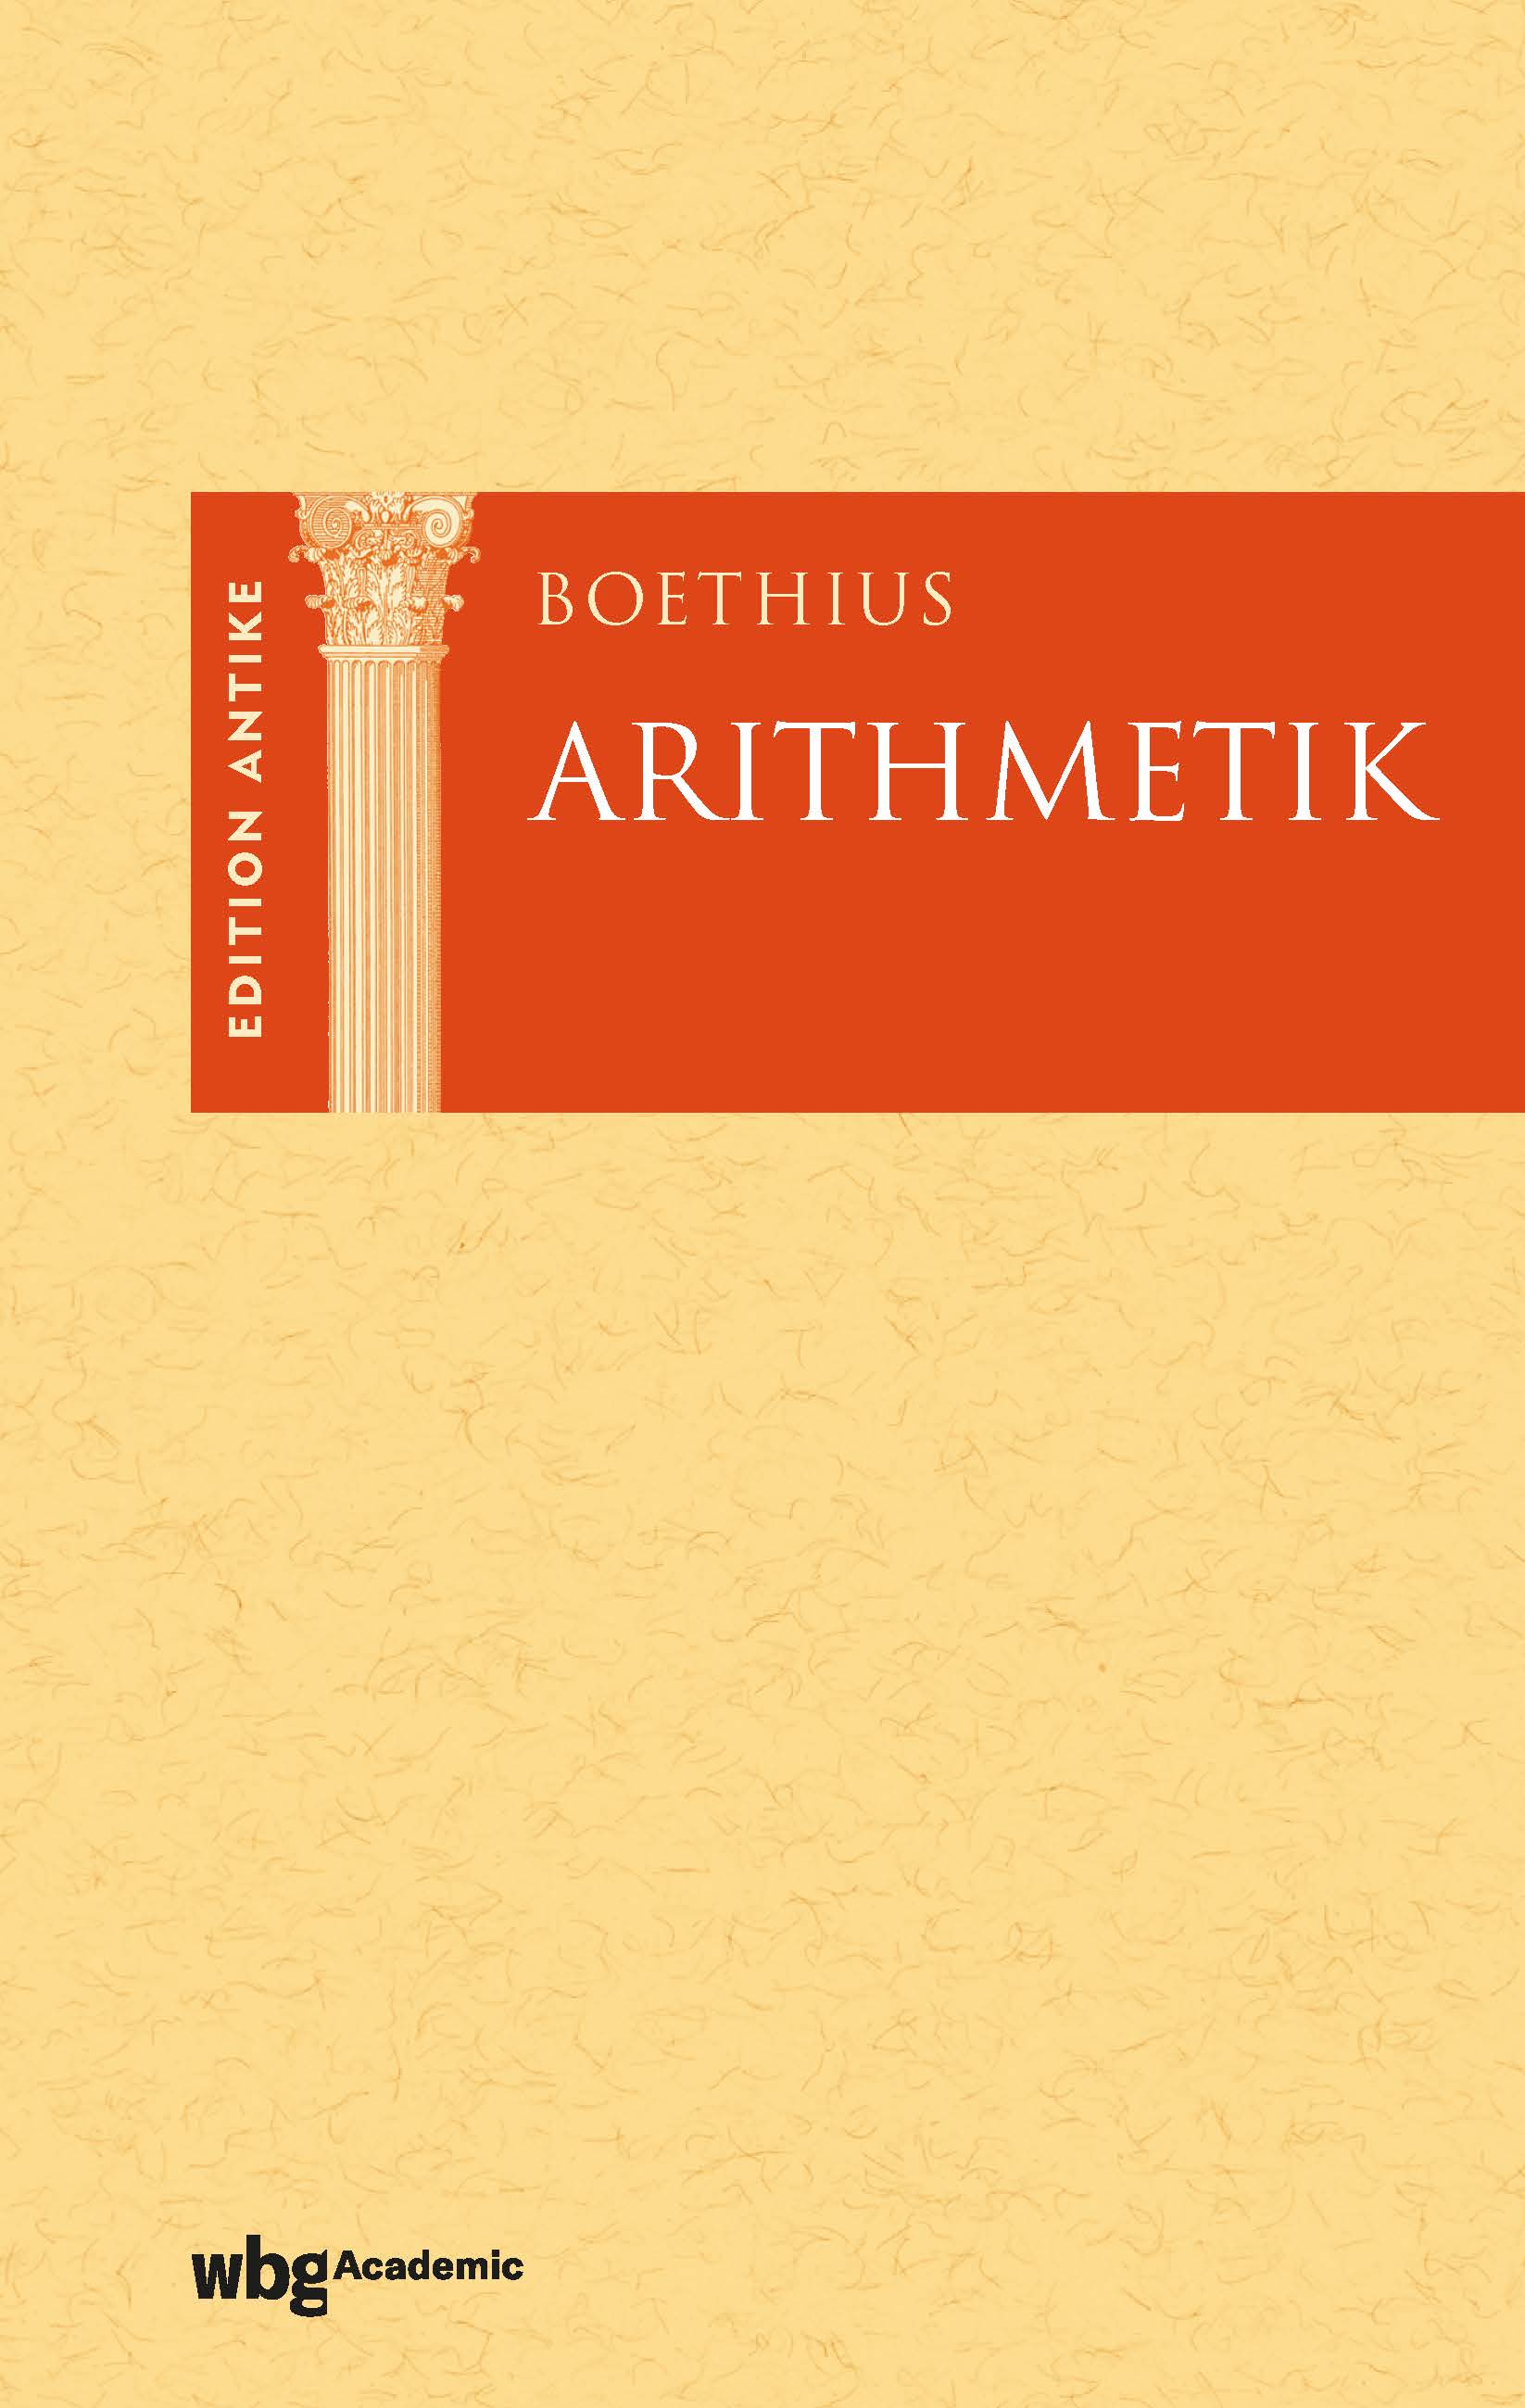 Boethius Arithmetik